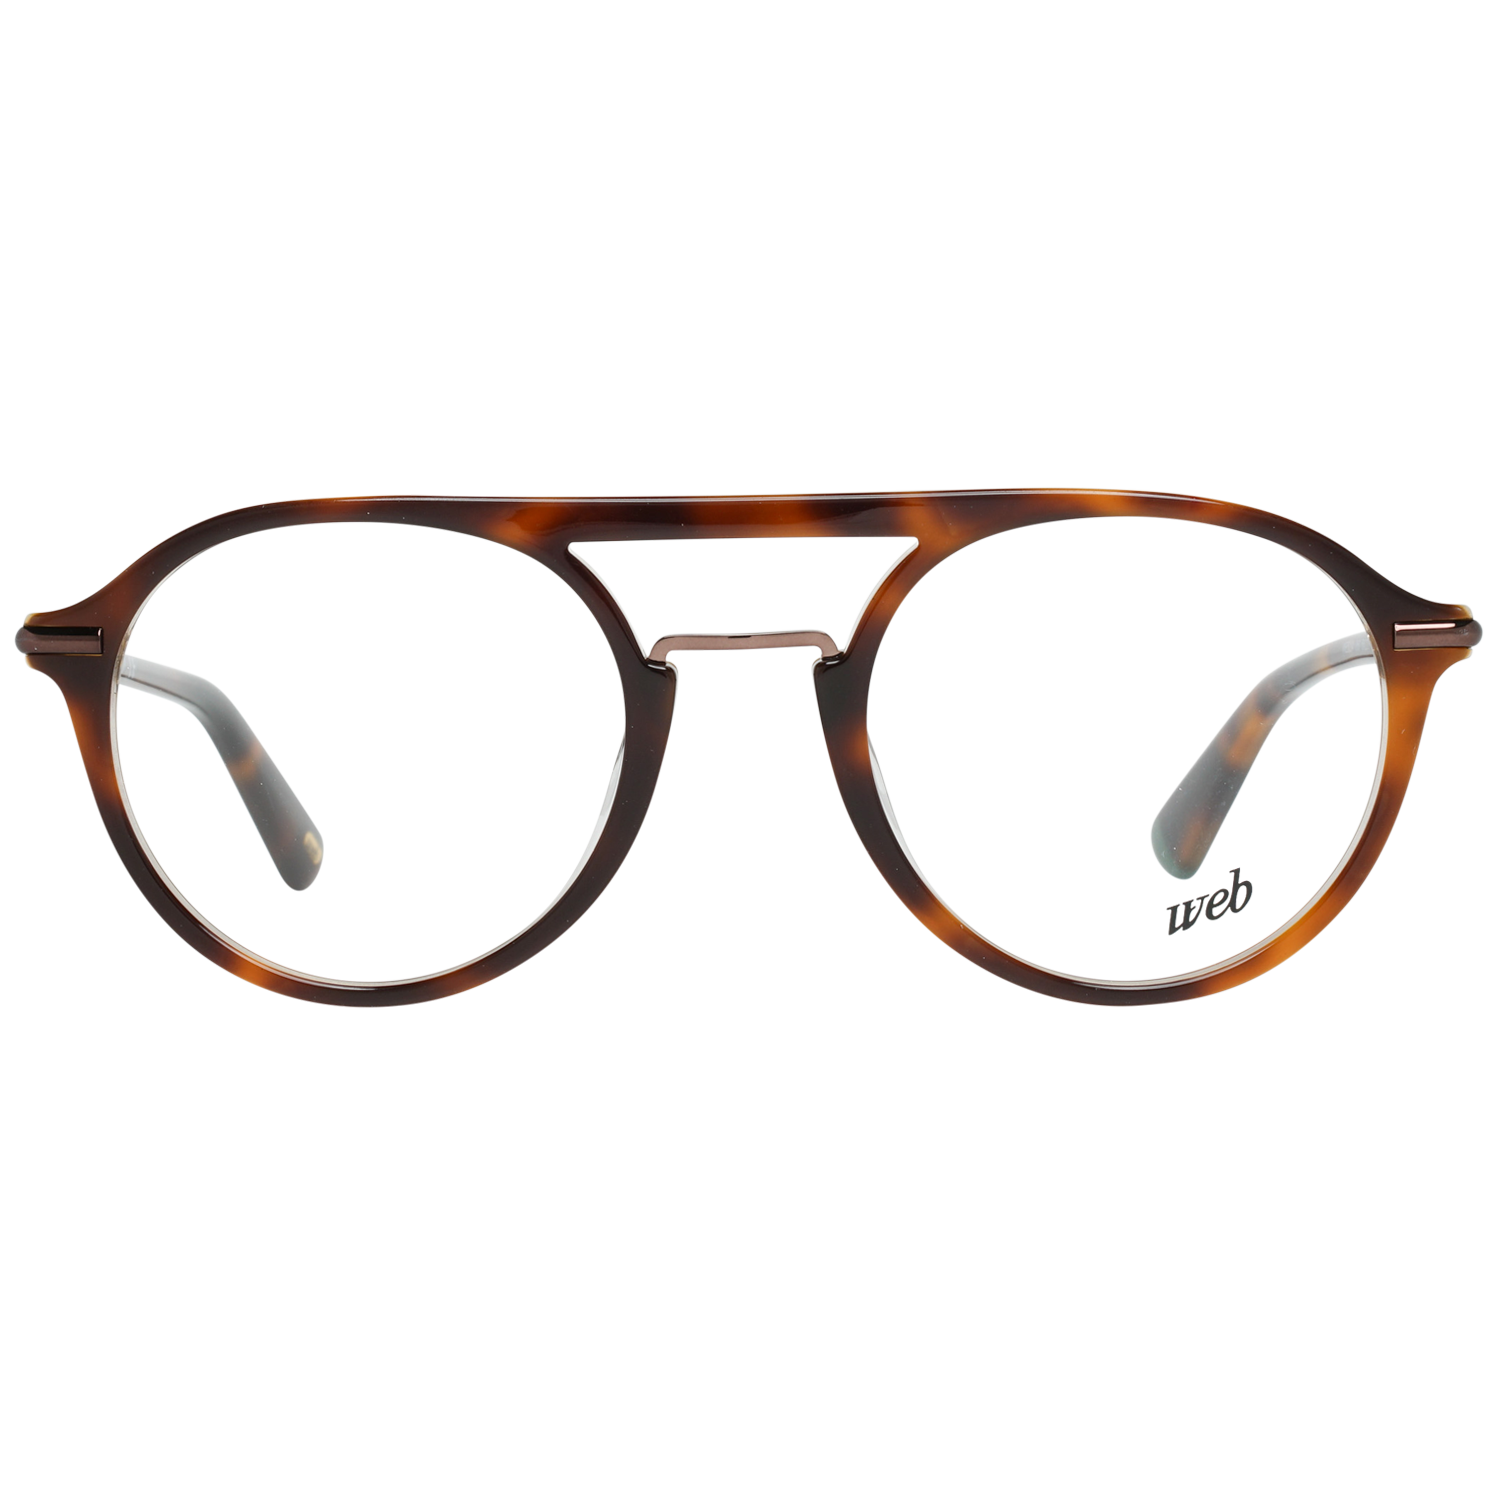 Web Frames Web Glasses Optical Frame WE5234 056 50 Eyeglasses Eyewear UK USA Australia 